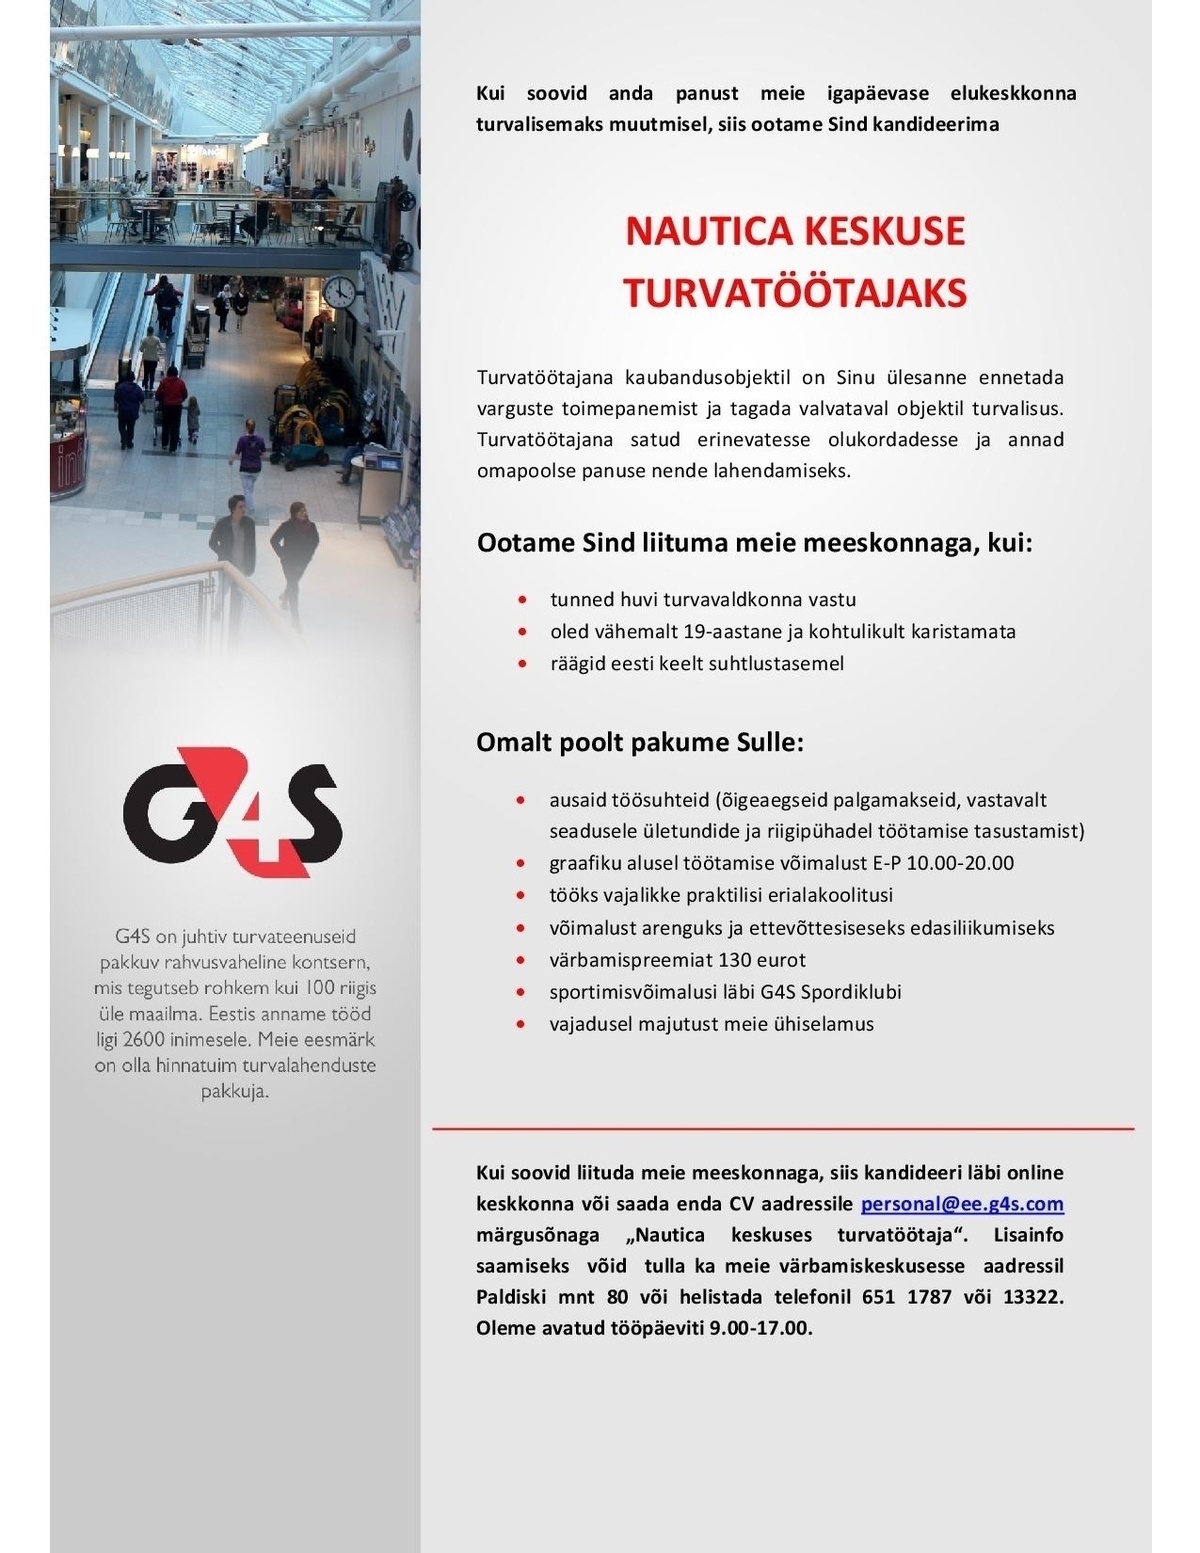 AS G4S Eesti Nautica Keskuse turvatöötaja